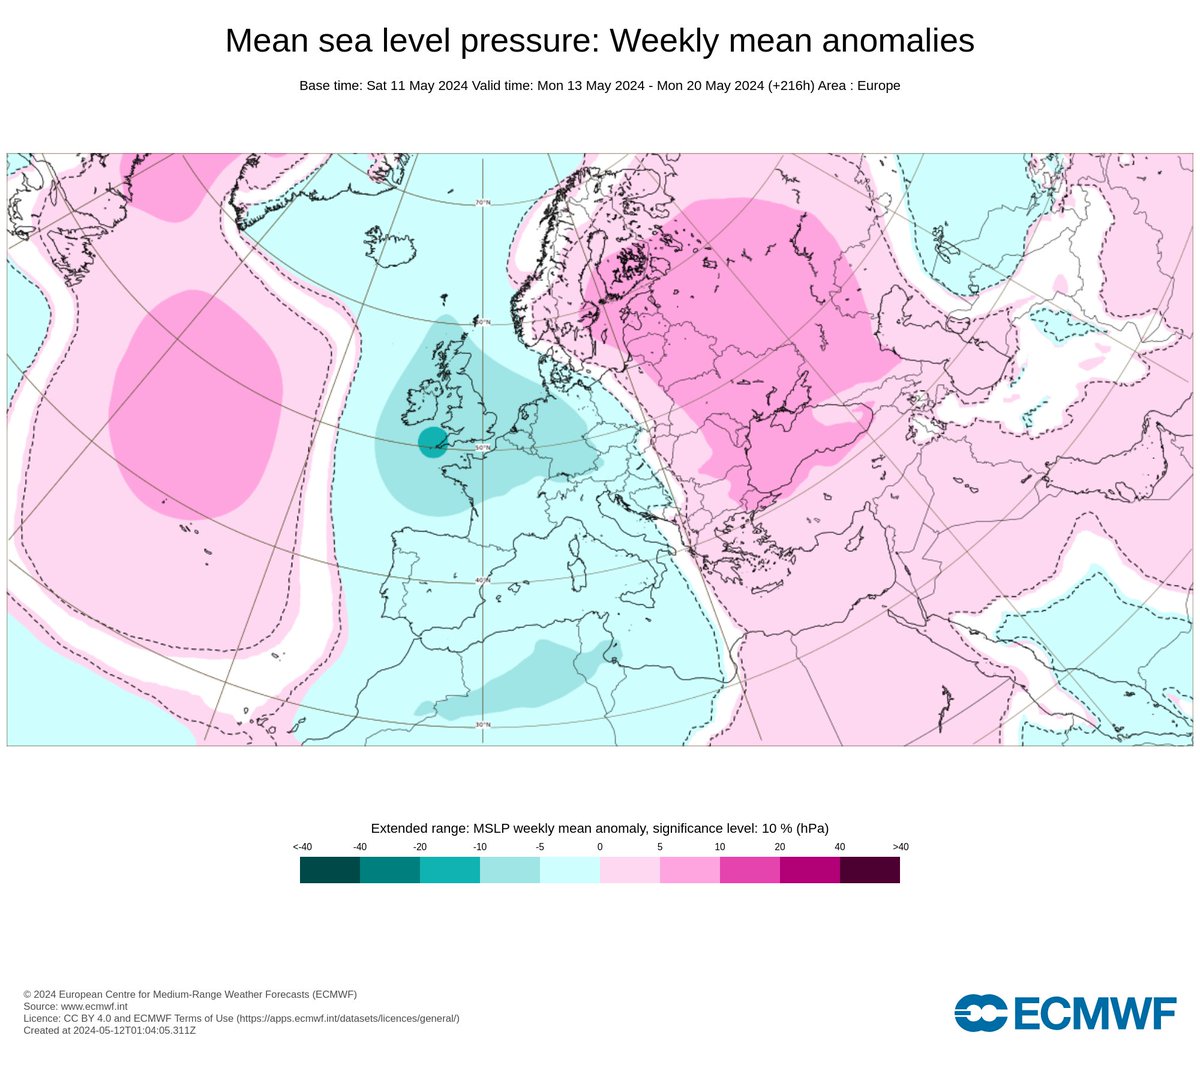 Anomalías de temperatura, precipitación y presión previstas para la semana que viene según la última pasada de la predicción mensual del Centro Europeo.